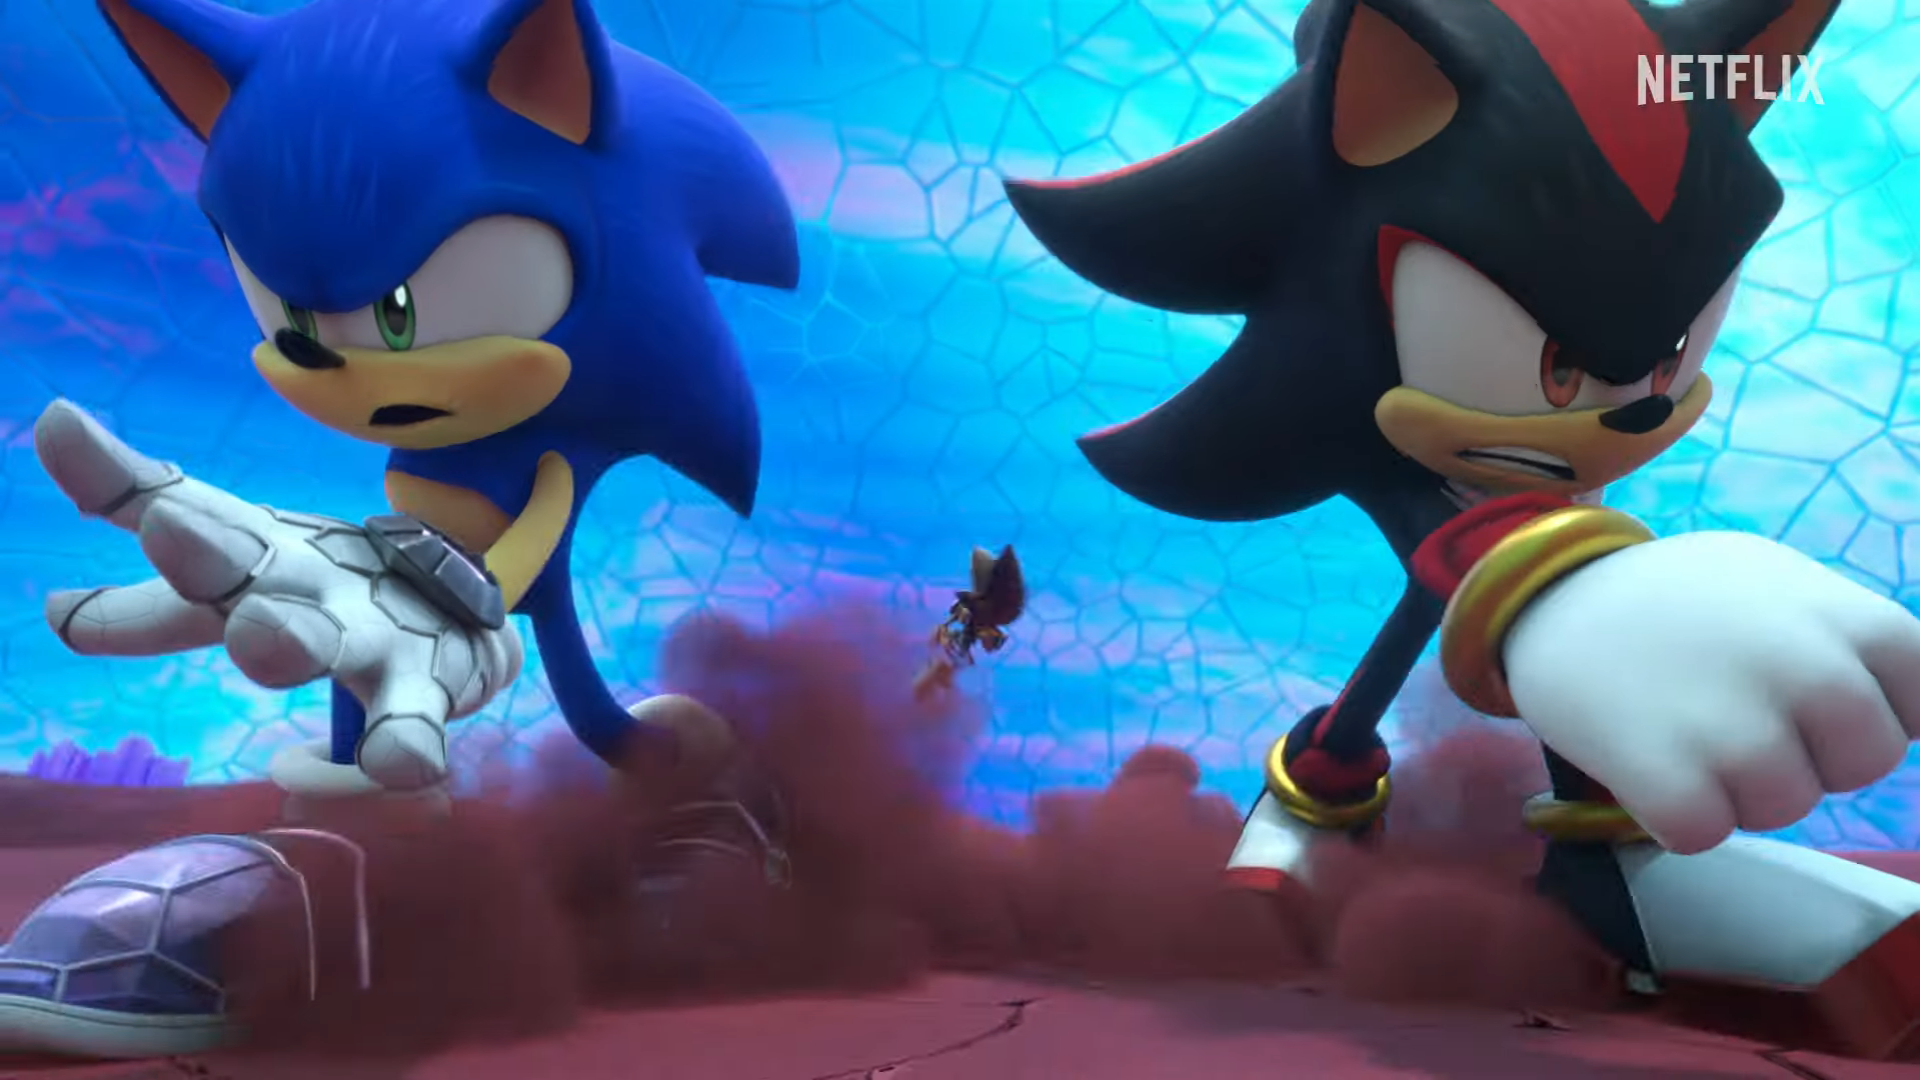 Sonic Prime Uploads Full First Season 3 Episode on YouTube